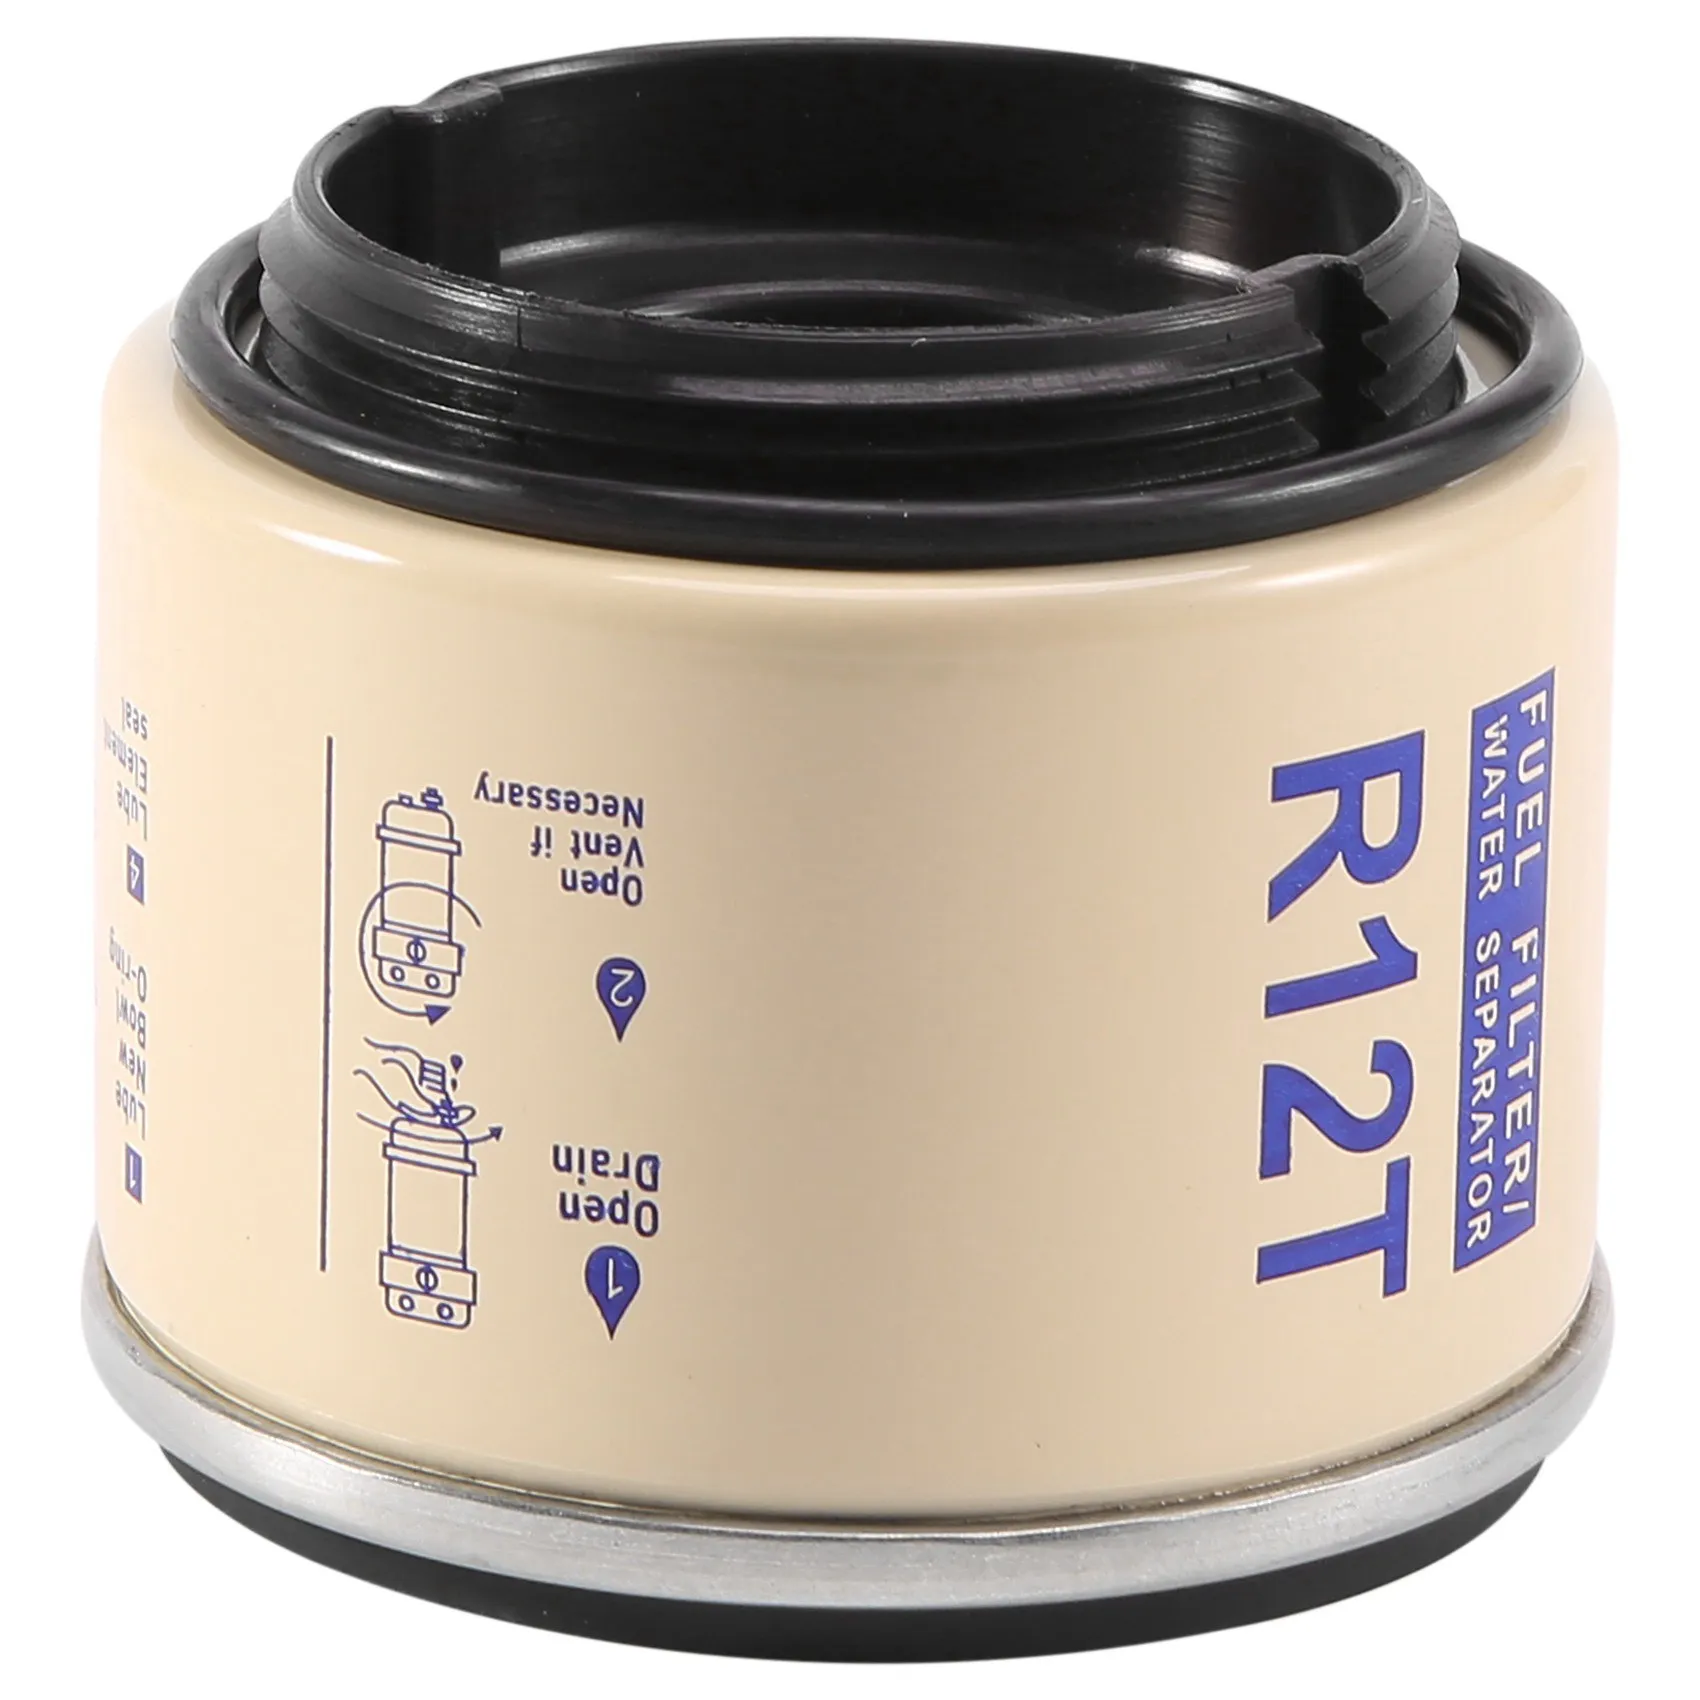 R12T Paliva /Voda Oddeľovač Filter Motora pre 40R 120AT S3240 NPT ZG1/4-19 Automobilových Dielov Kompletný Kombinovaný Filter s Tonerom